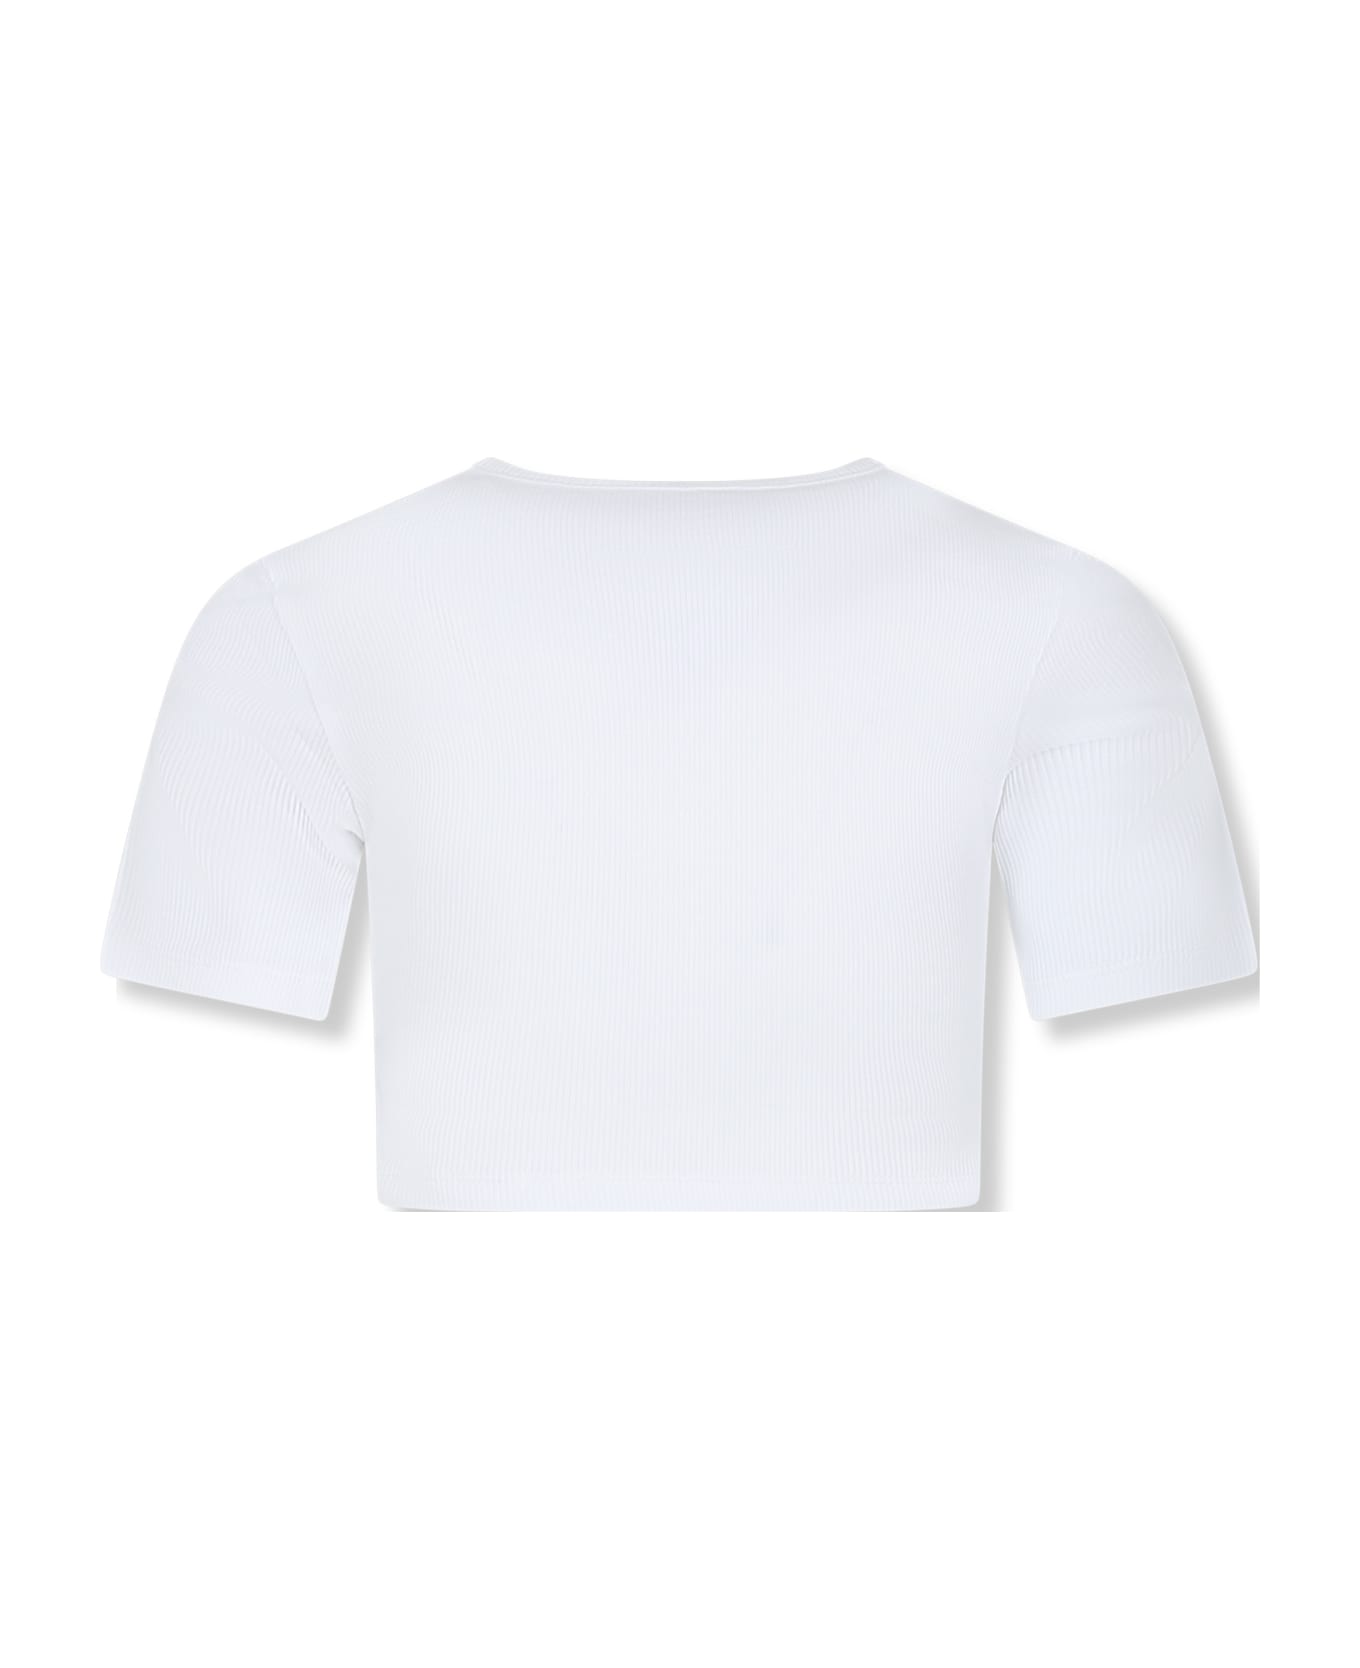 MM6 Maison Margiela White T-shirt For Girl With Logo - White